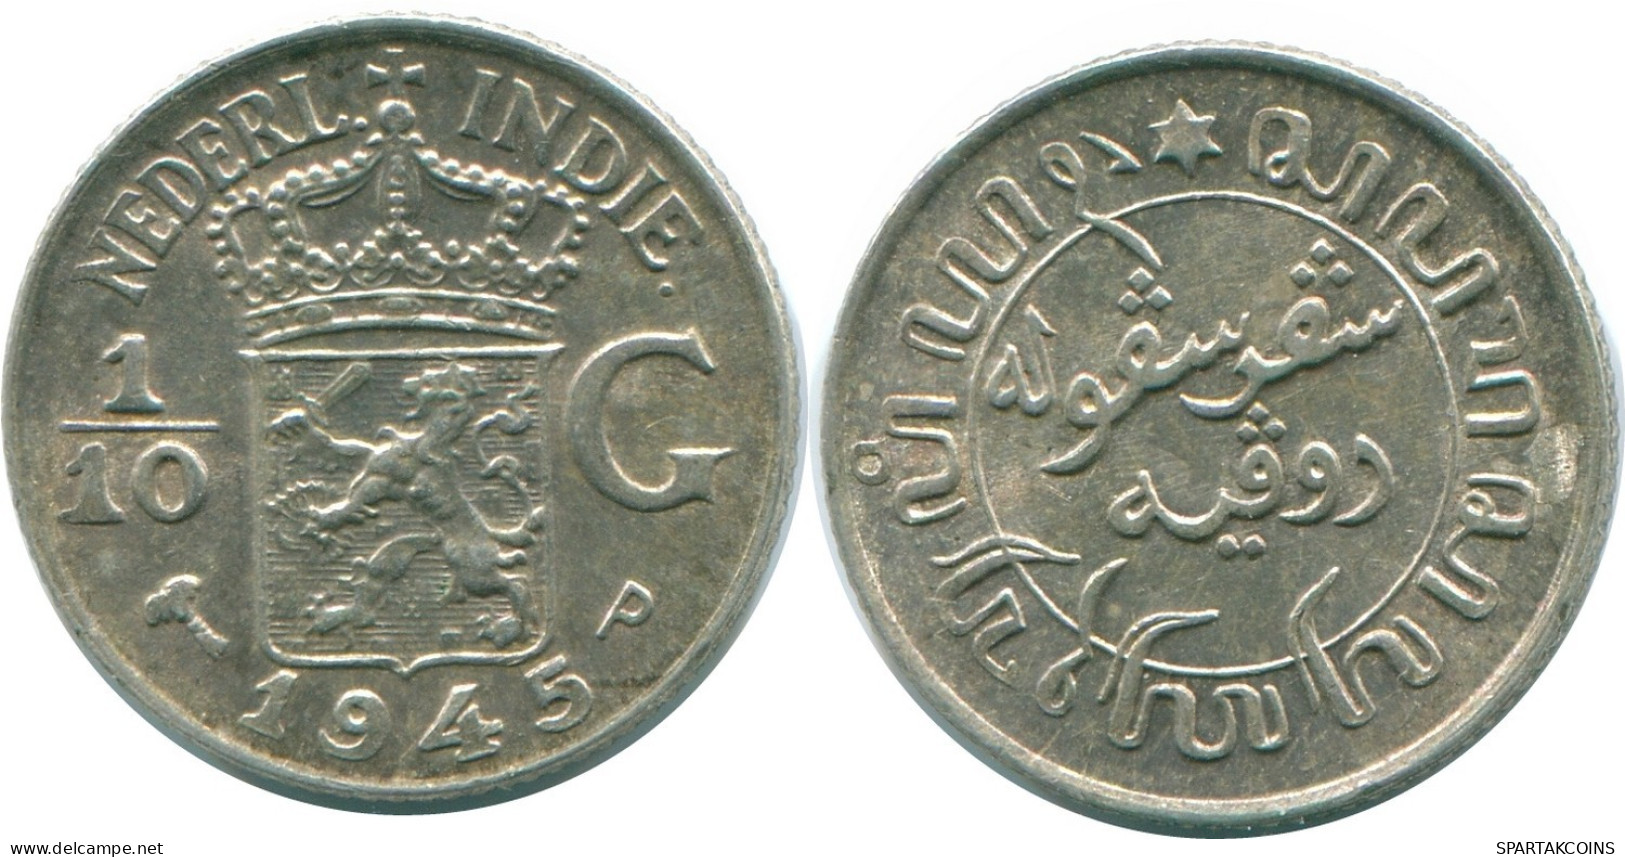 1/10 GULDEN 1945 P NETHERLANDS EAST INDIES SILVER Colonial Coin #NL14093.3.U.A - Niederländisch-Indien